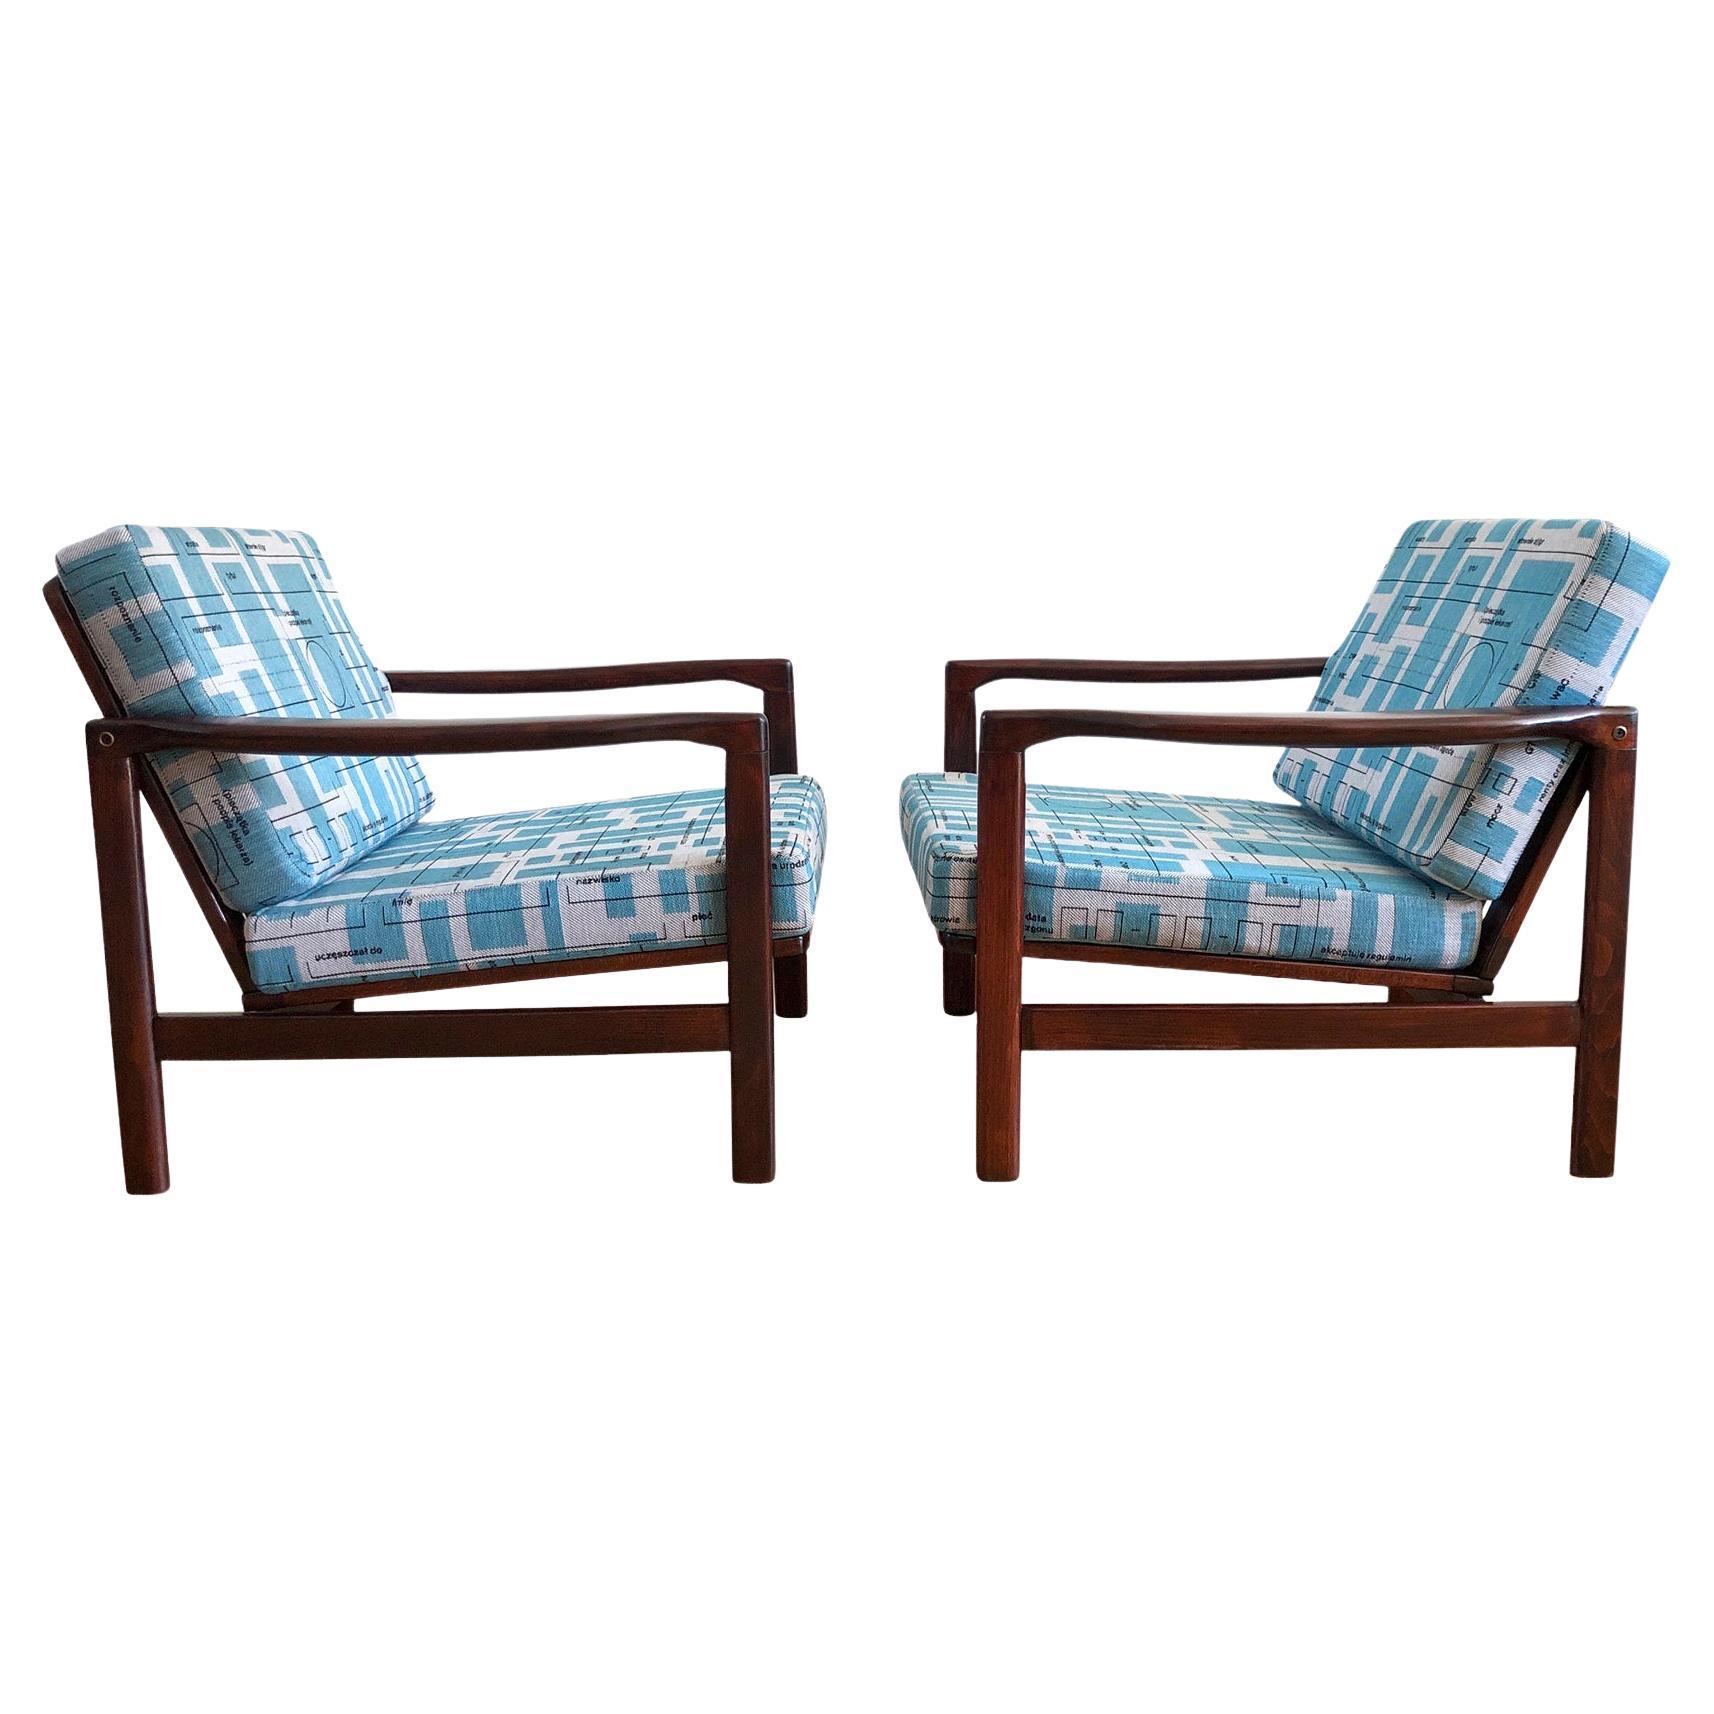 L'ensemble de deux fauteuils modèle, conçu par Zenon Baczyk, a été fabriqué par Swarzedzkie Fabryki Mebli en Pologne dans les années 1960. La structure est faite de bois de hêtre d'une couleur palissandre chaude, finie avec un vernis semi-mat. Le